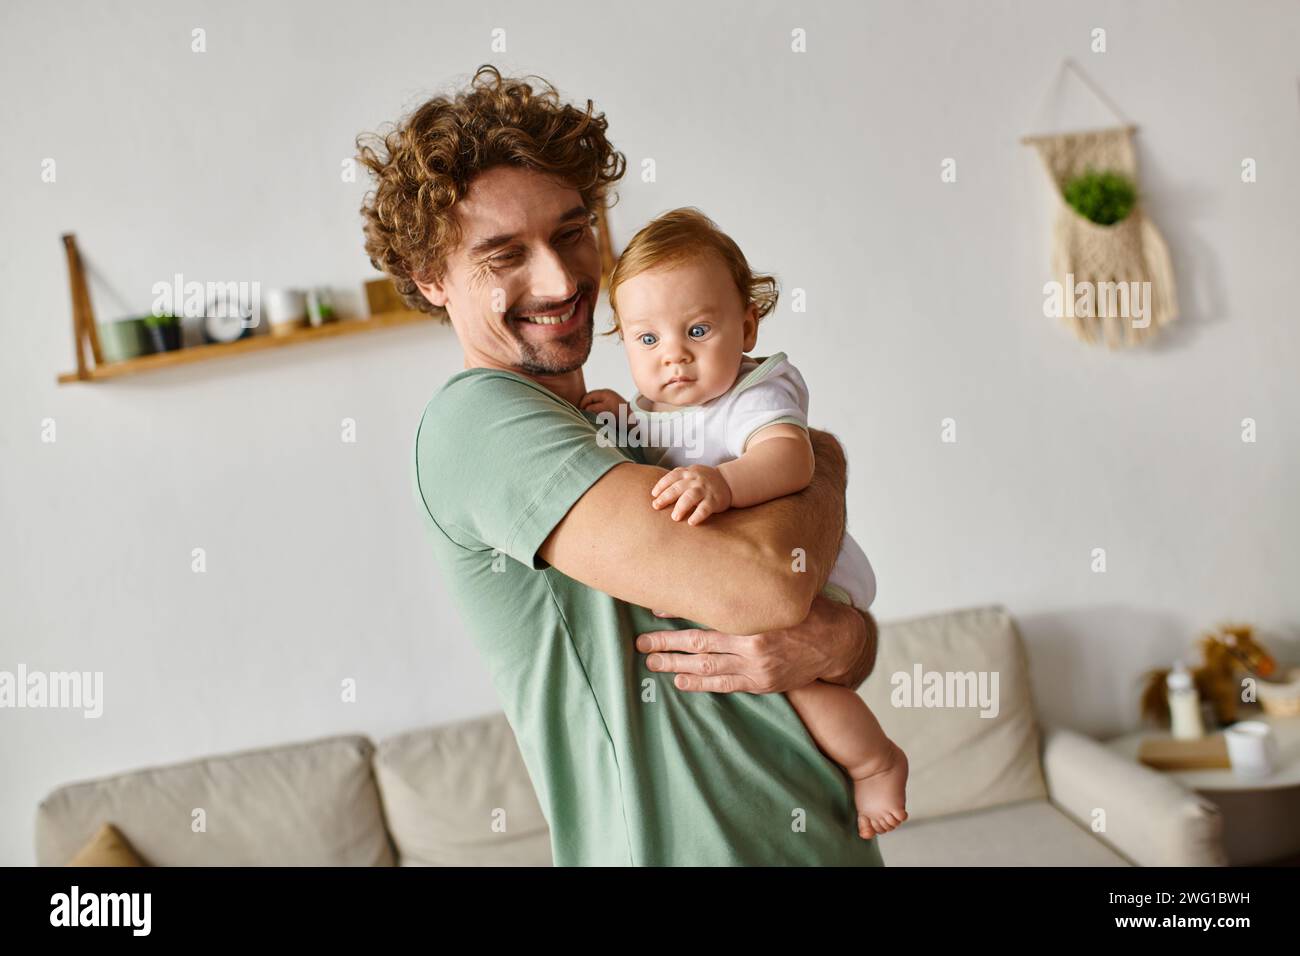 Fröhlicher Vater mit Bart, der seinen kleinen Sohn mit blauen Augen in einem gemütlichen Wohnzimmer hält, Porträt Stockfoto